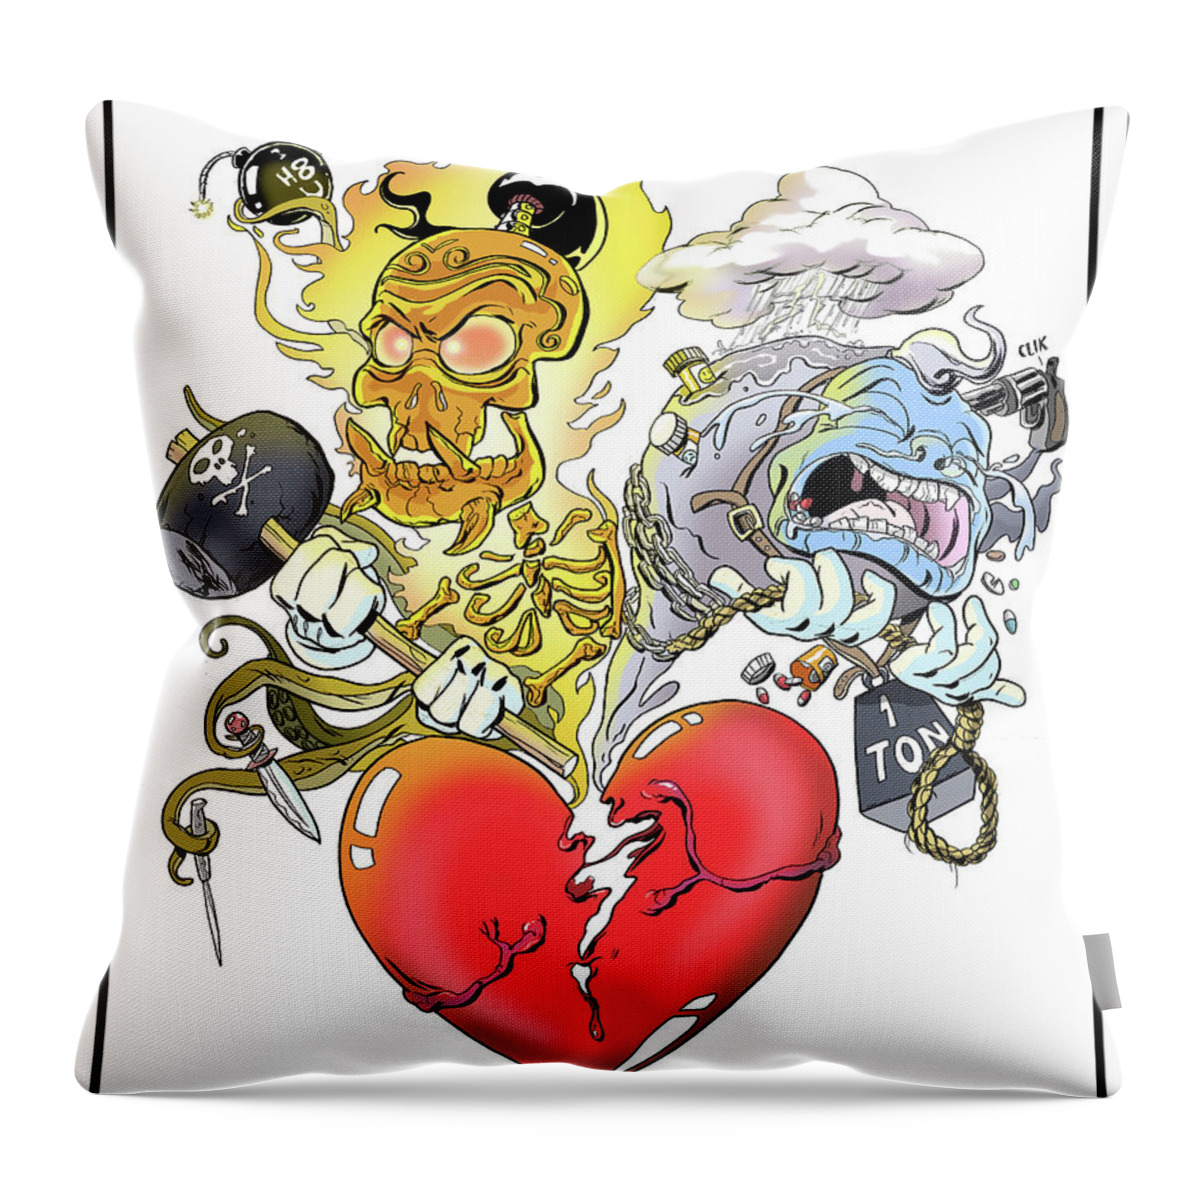 Heart Throw Pillow featuring the digital art Heartbreak by Kynn Peterkin